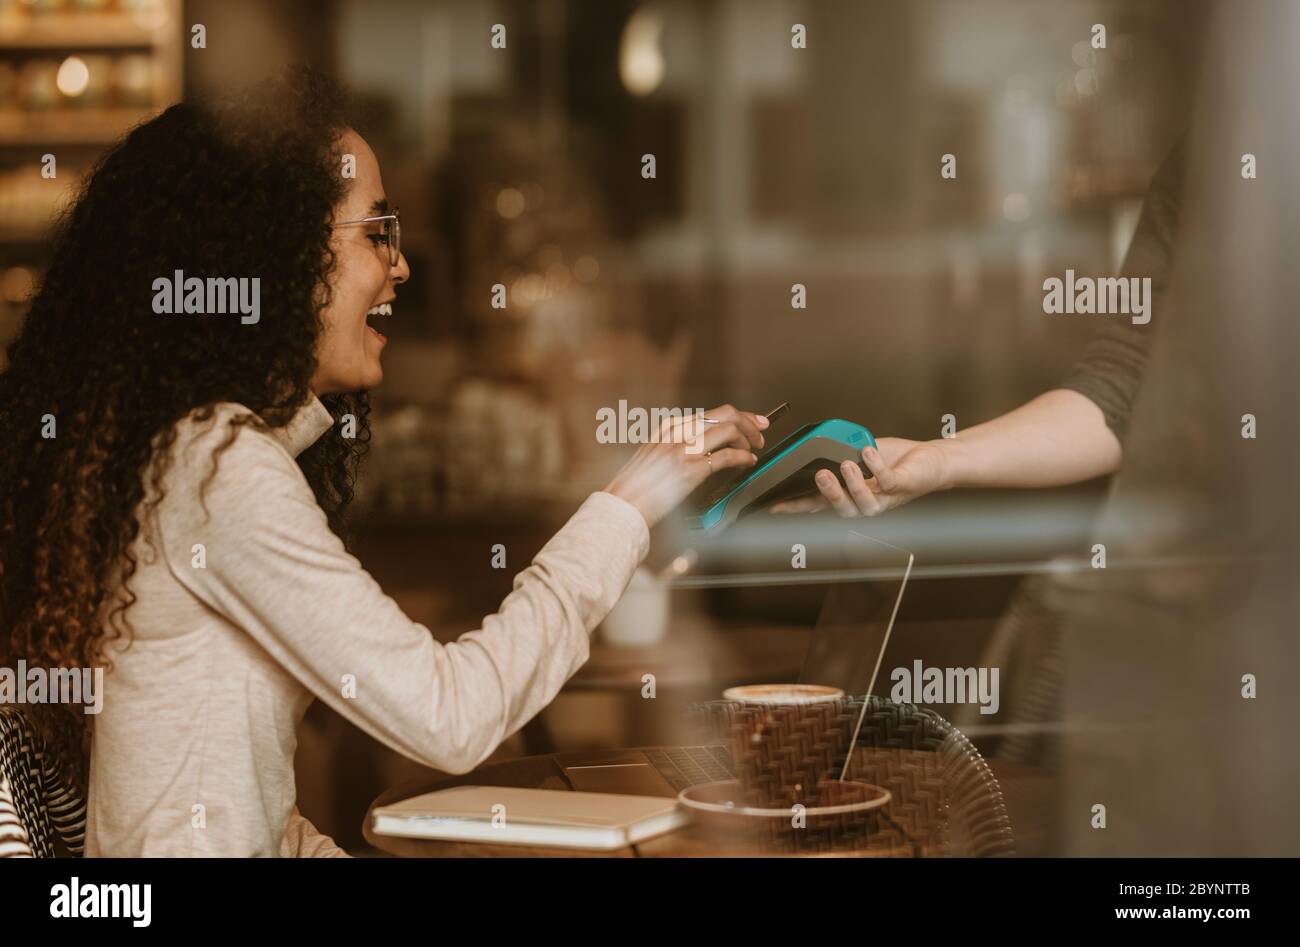 Lächelnde Frau, die mit NFC-Technologie in einem Café bezahlt, um ihre Rechnung zu bezahlen. Weibliche Kundin, die ihre Rechnung mit einem Smartphone und einem elektronischen Lesegerät bei c bezahlt Stockfoto